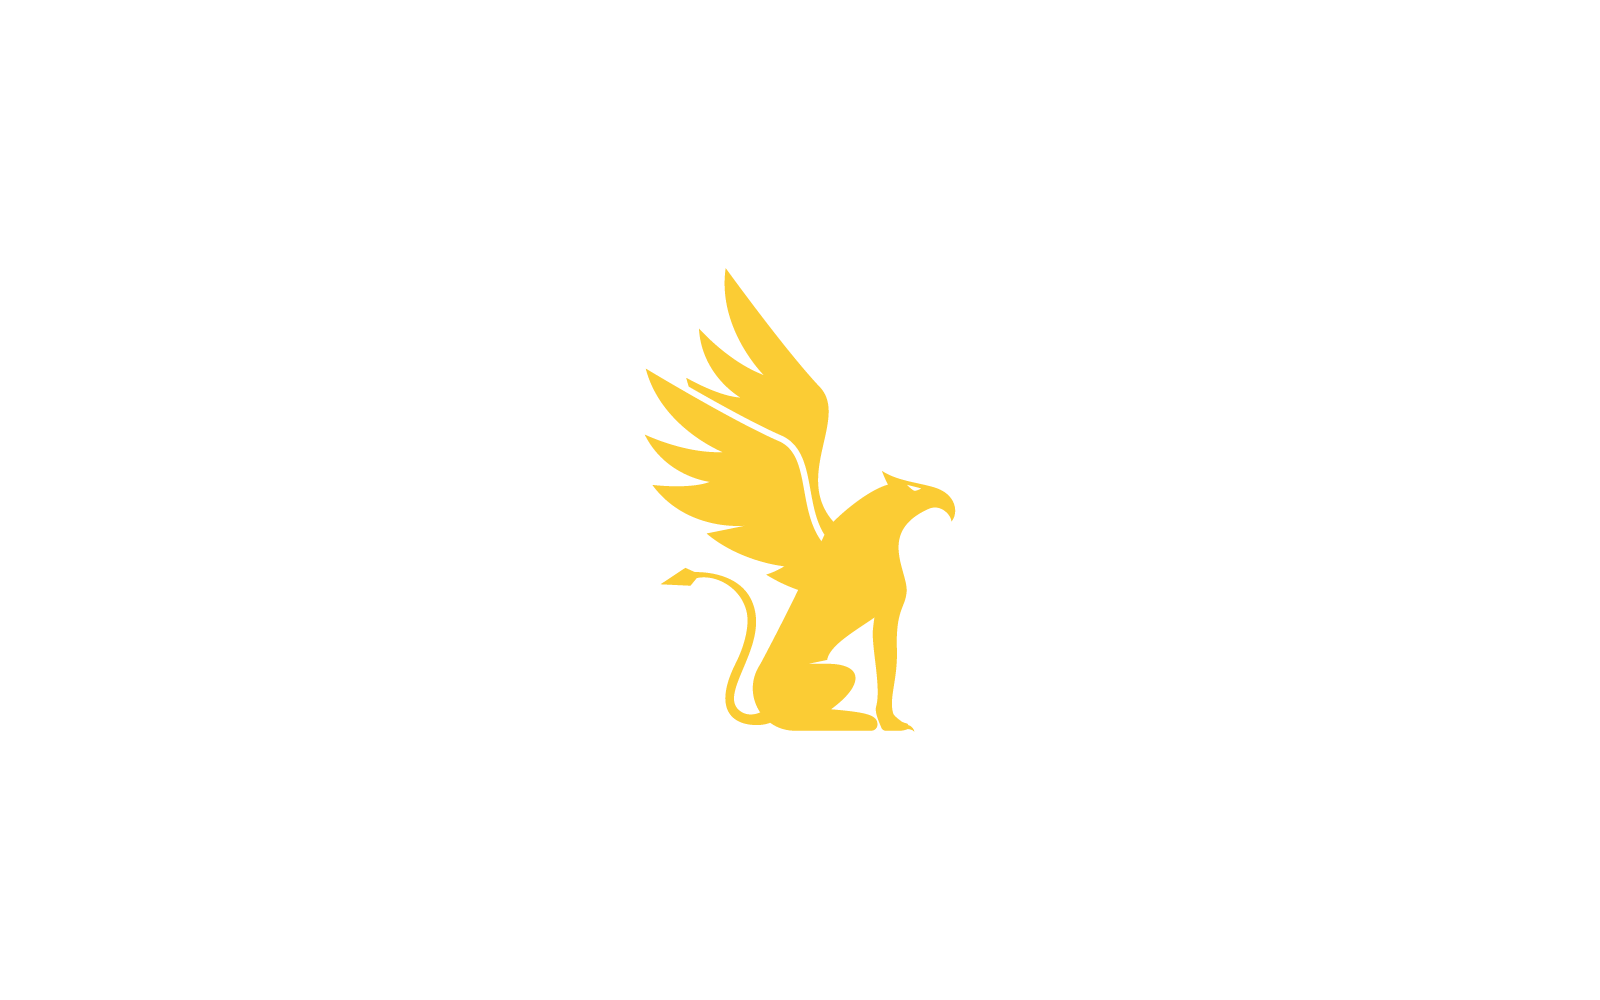 Griffin logo illustration vecteur design plat